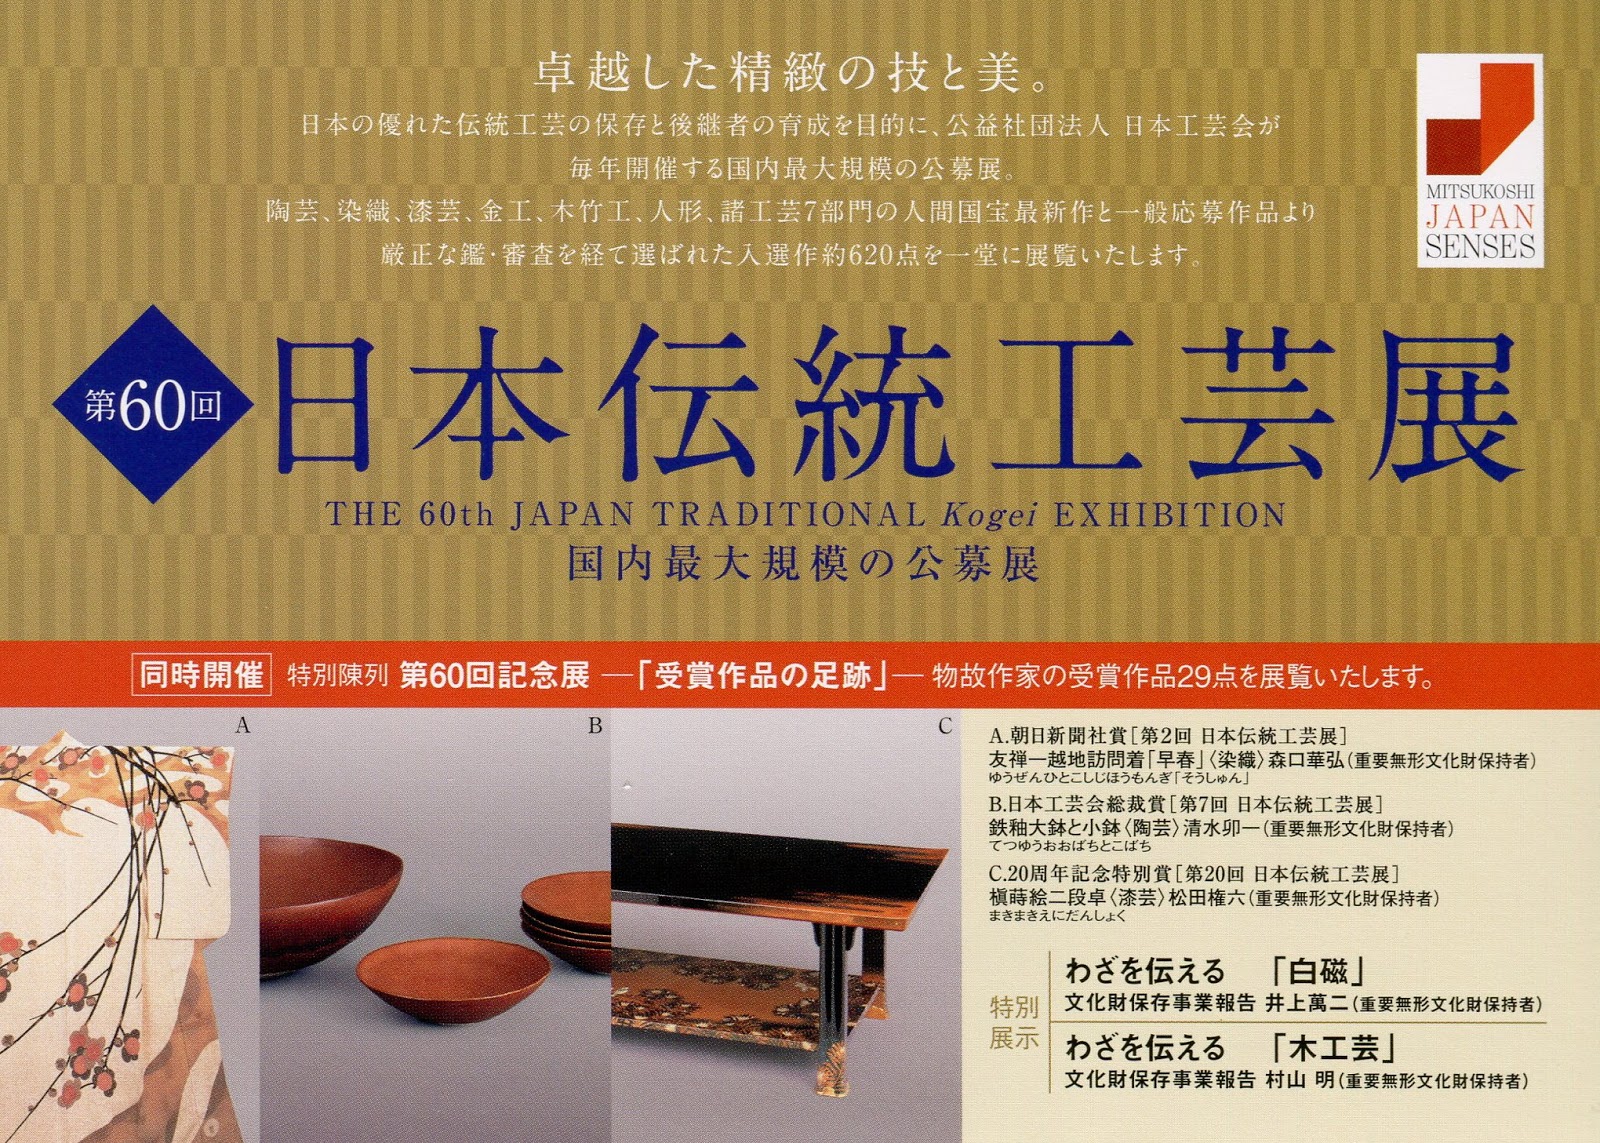 作品 渡辺岳司: 第60回日本伝統工芸展